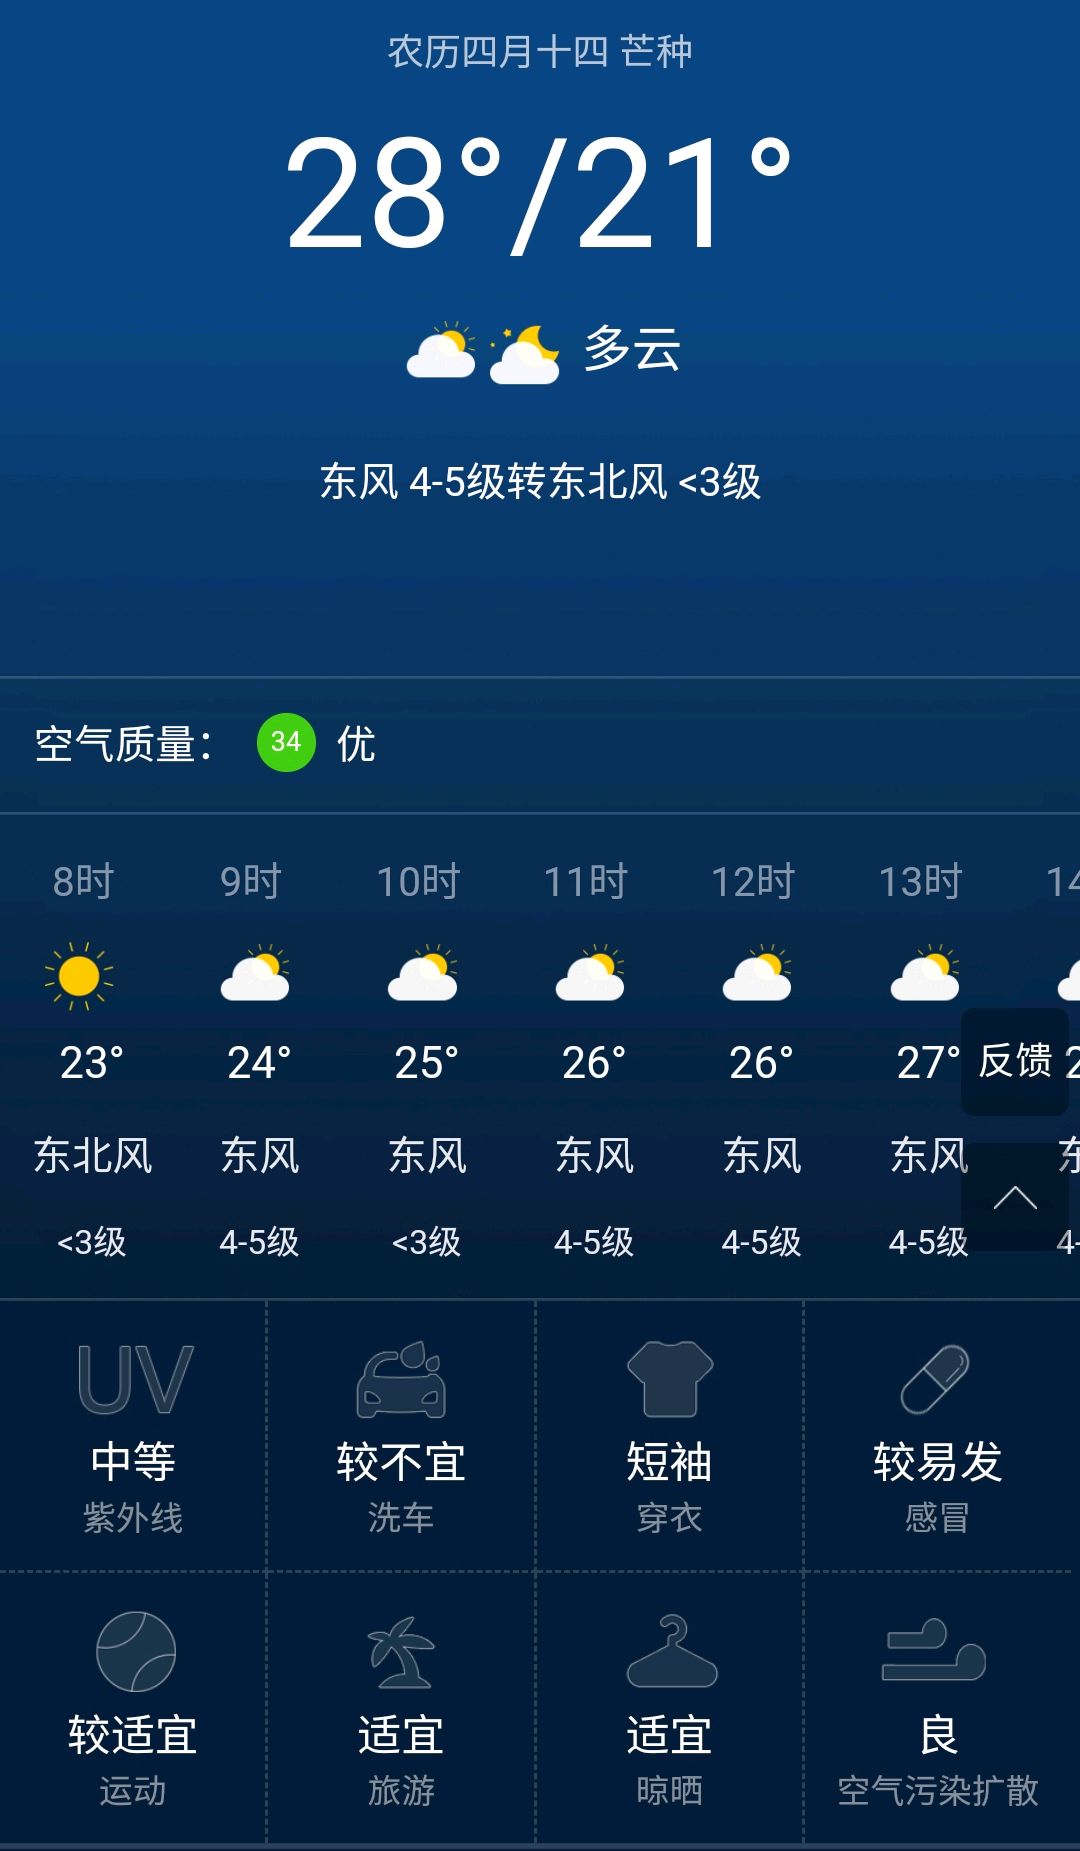 天津6月5日天气预报:今天风力较大,请注意防范